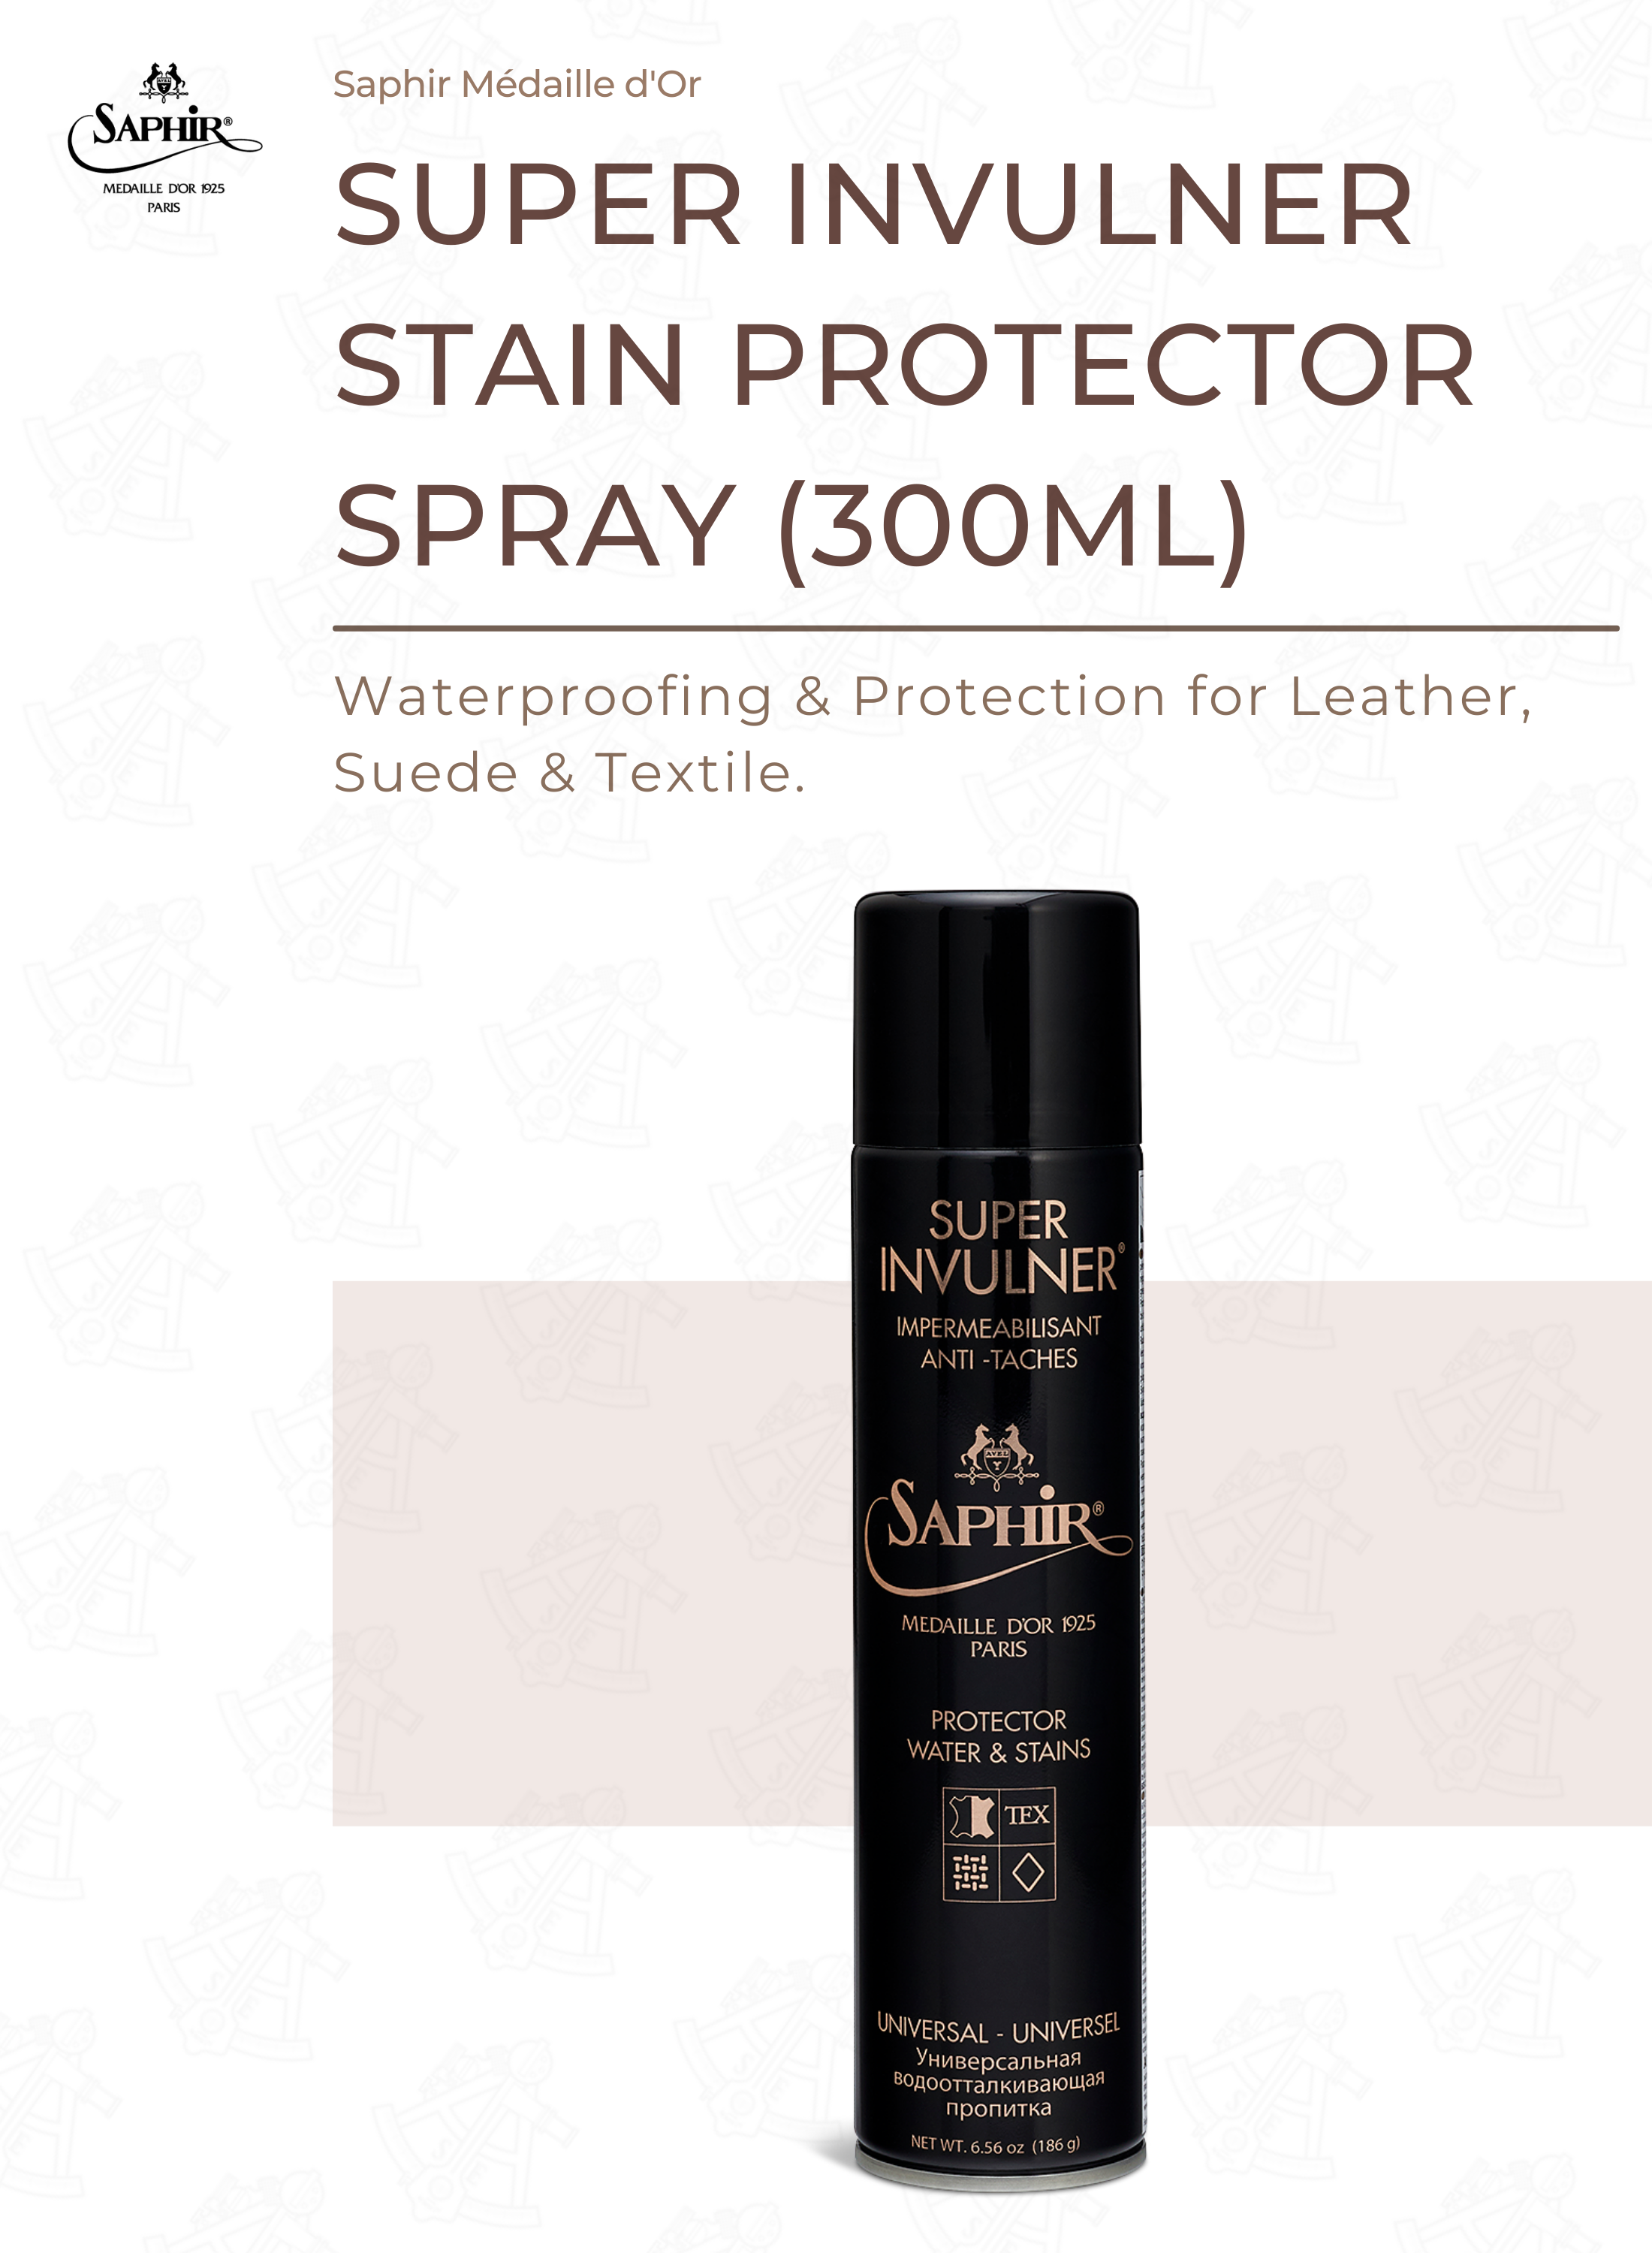 Waterproof spray anti-stain - Protector - Saphir Medaille d'or